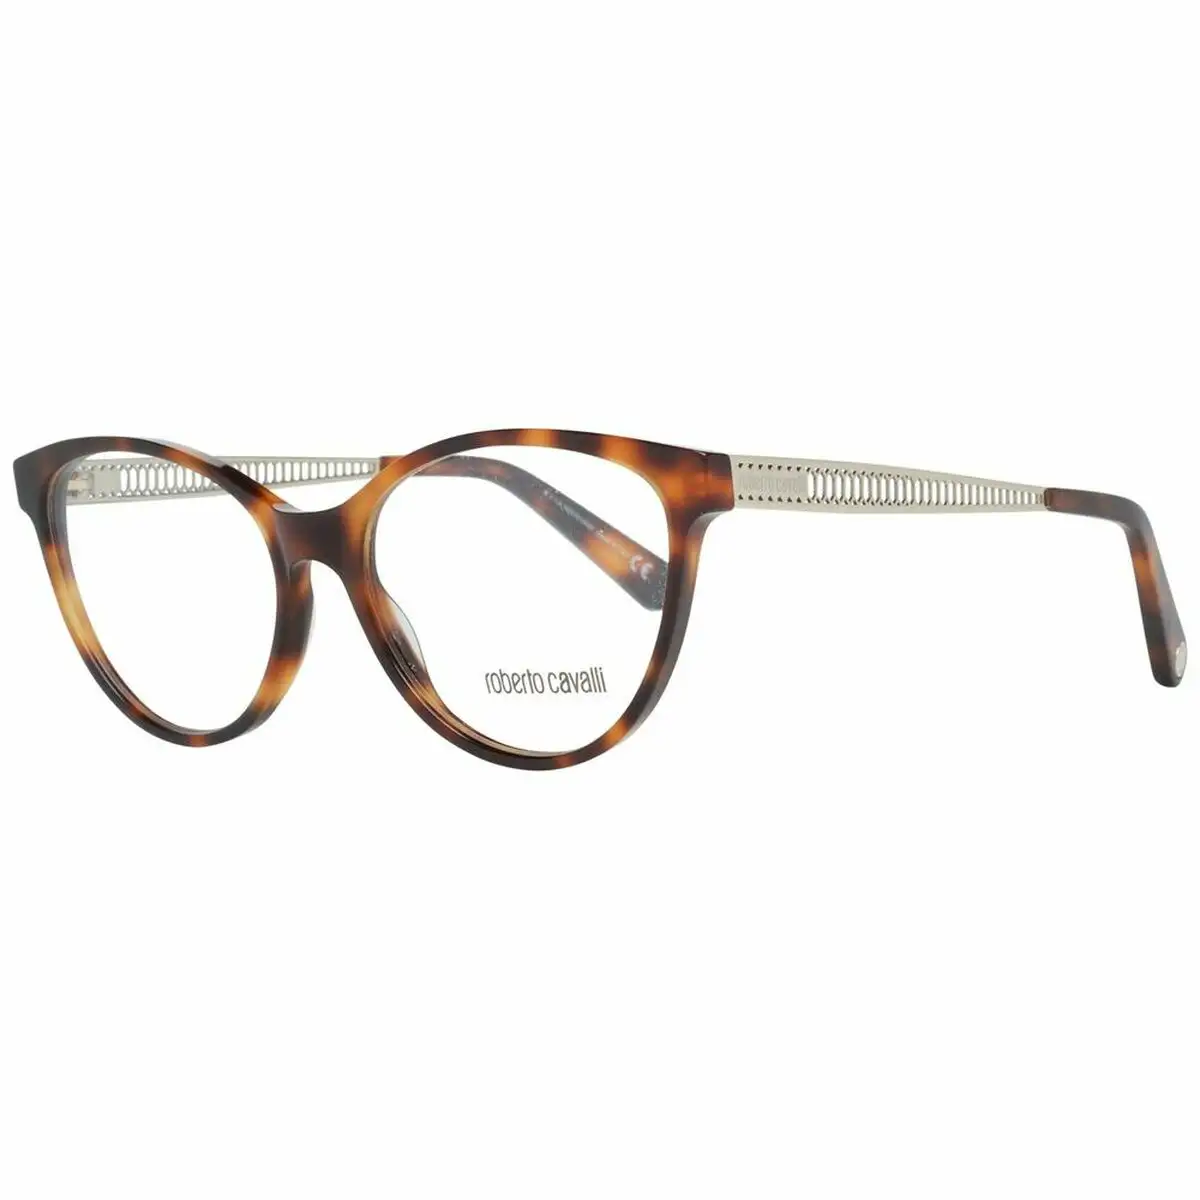 Monture de lunettes femme roberto cavalli rc5098 54052 marron o 54 mm _6357. DIAYTAR SENEGAL - Votre Pass vers la Découverte. Explorez notre boutique en ligne et plongez dans un voyage à travers des produits authentiques et contemporains, tous réunis sous un même toit.